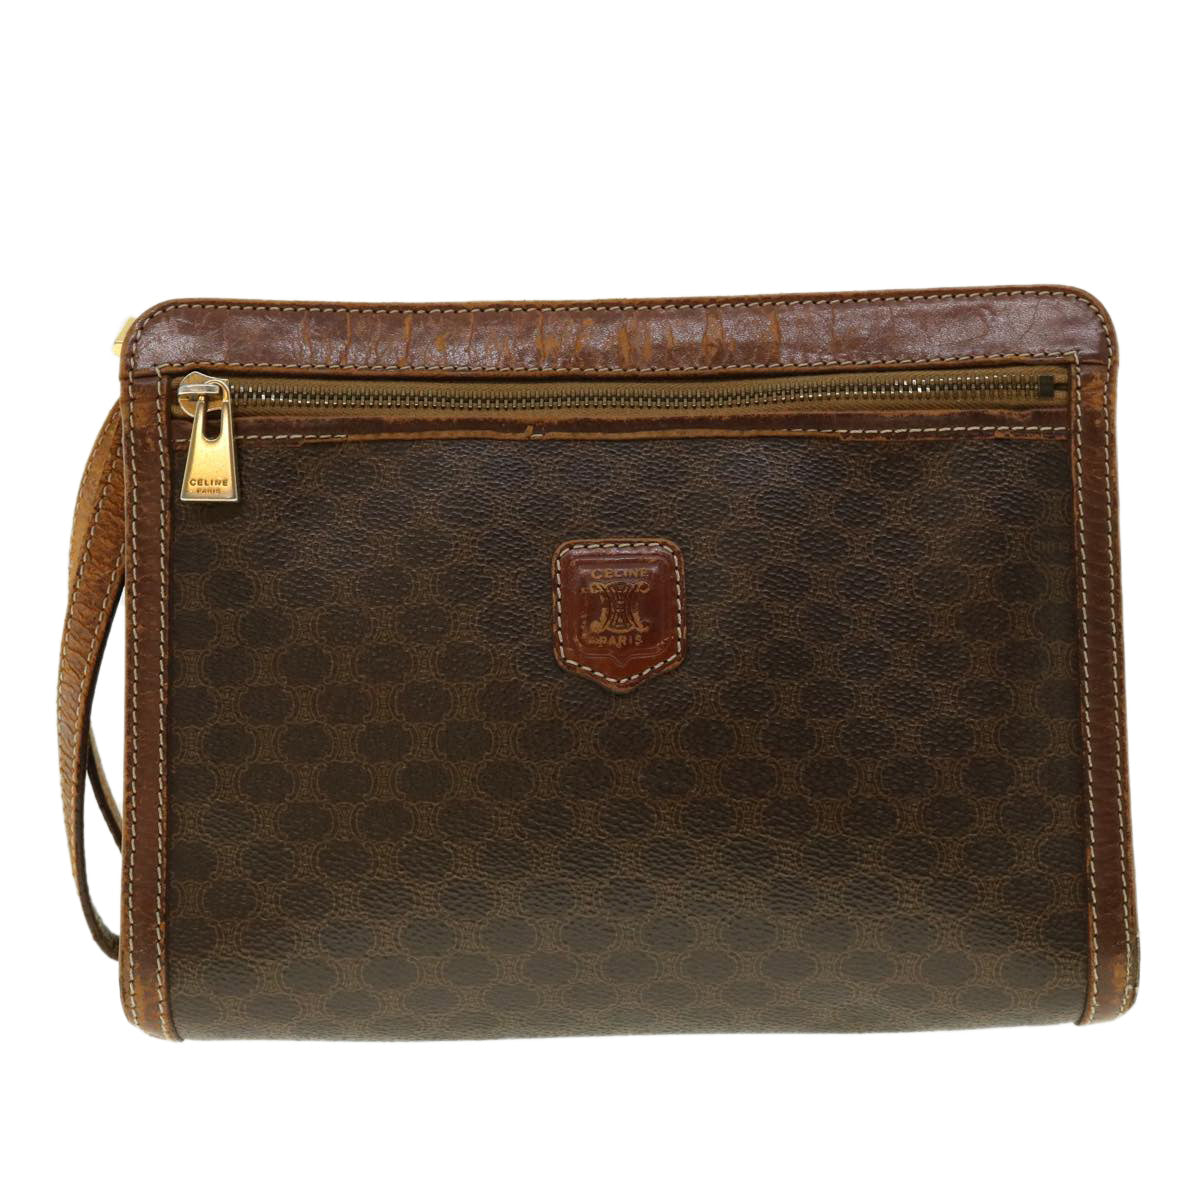 CELINE Macadam Canvas Clutch Bag PVC Leather 2Set Brown Auth fm2235 - 0